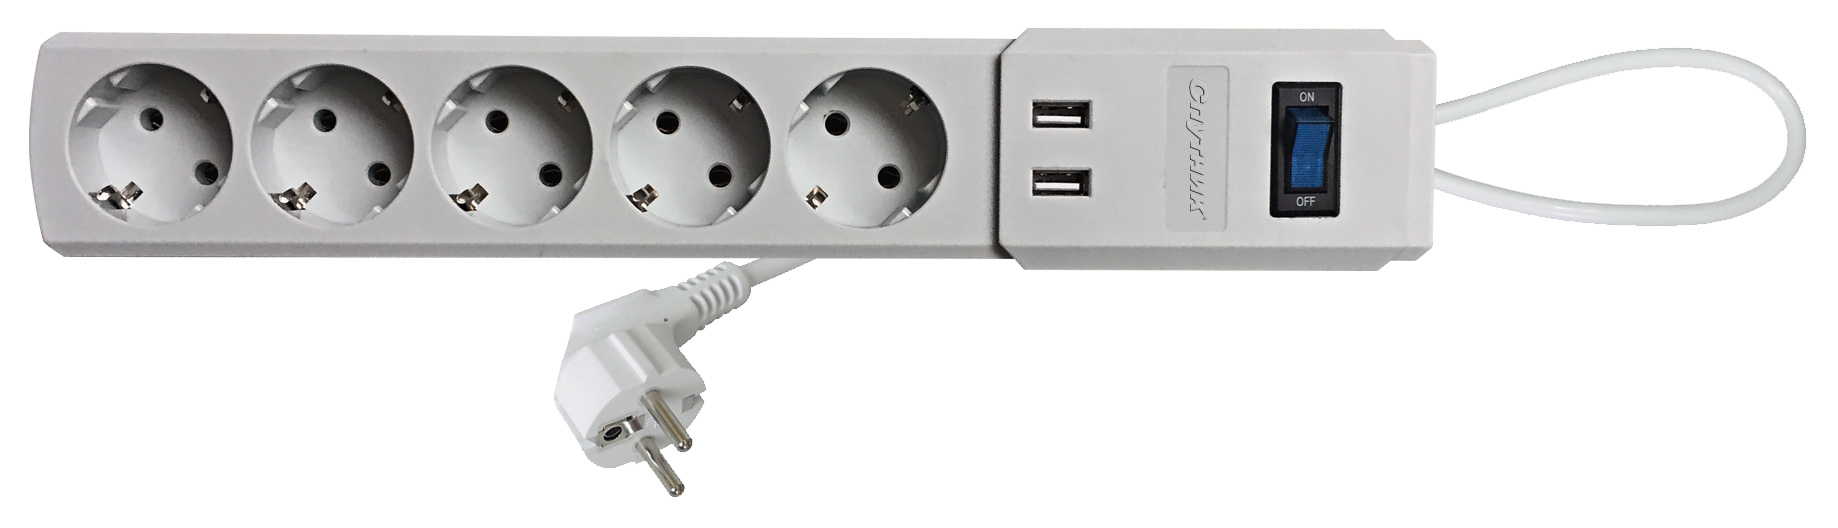 Сетевой фильтр-удлинитель Спутник SP-518 USB, 1,8м, серый фильтр масляный газон next дв 5344 евро 4 29 м felix